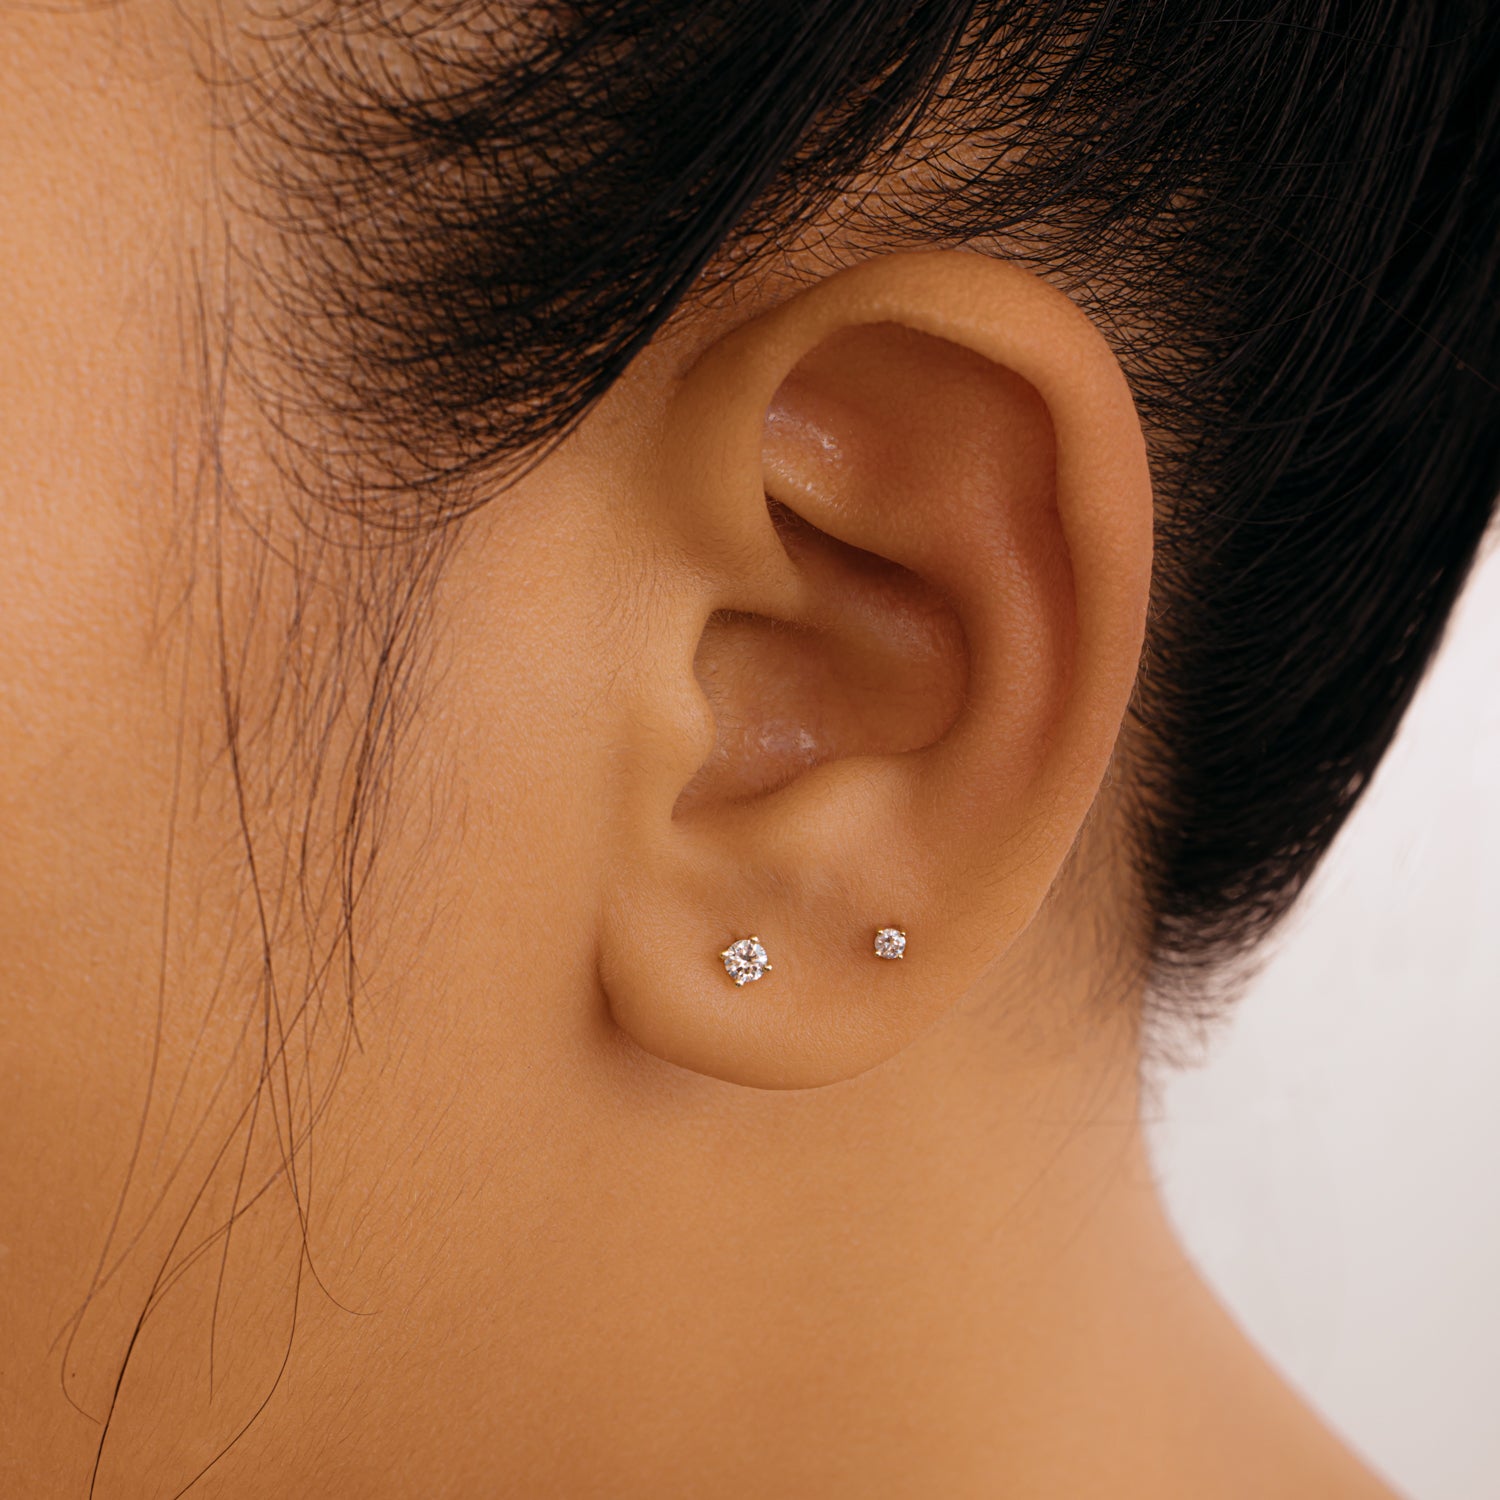 Buy 14k Gold Tiny Diamond Flower Stud Earrings Online in India - Etsy